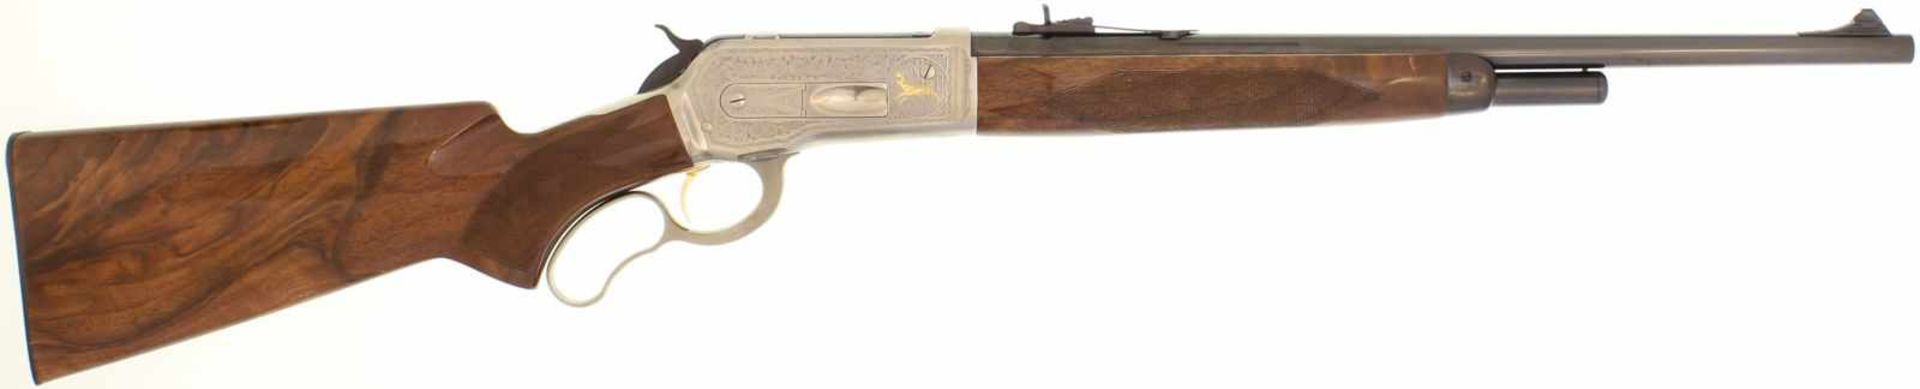 Unterhebelrepetiergewehr Browning Mod. 71 High Grade, Kal. .348Win@ LL 24", Rundlauf mit